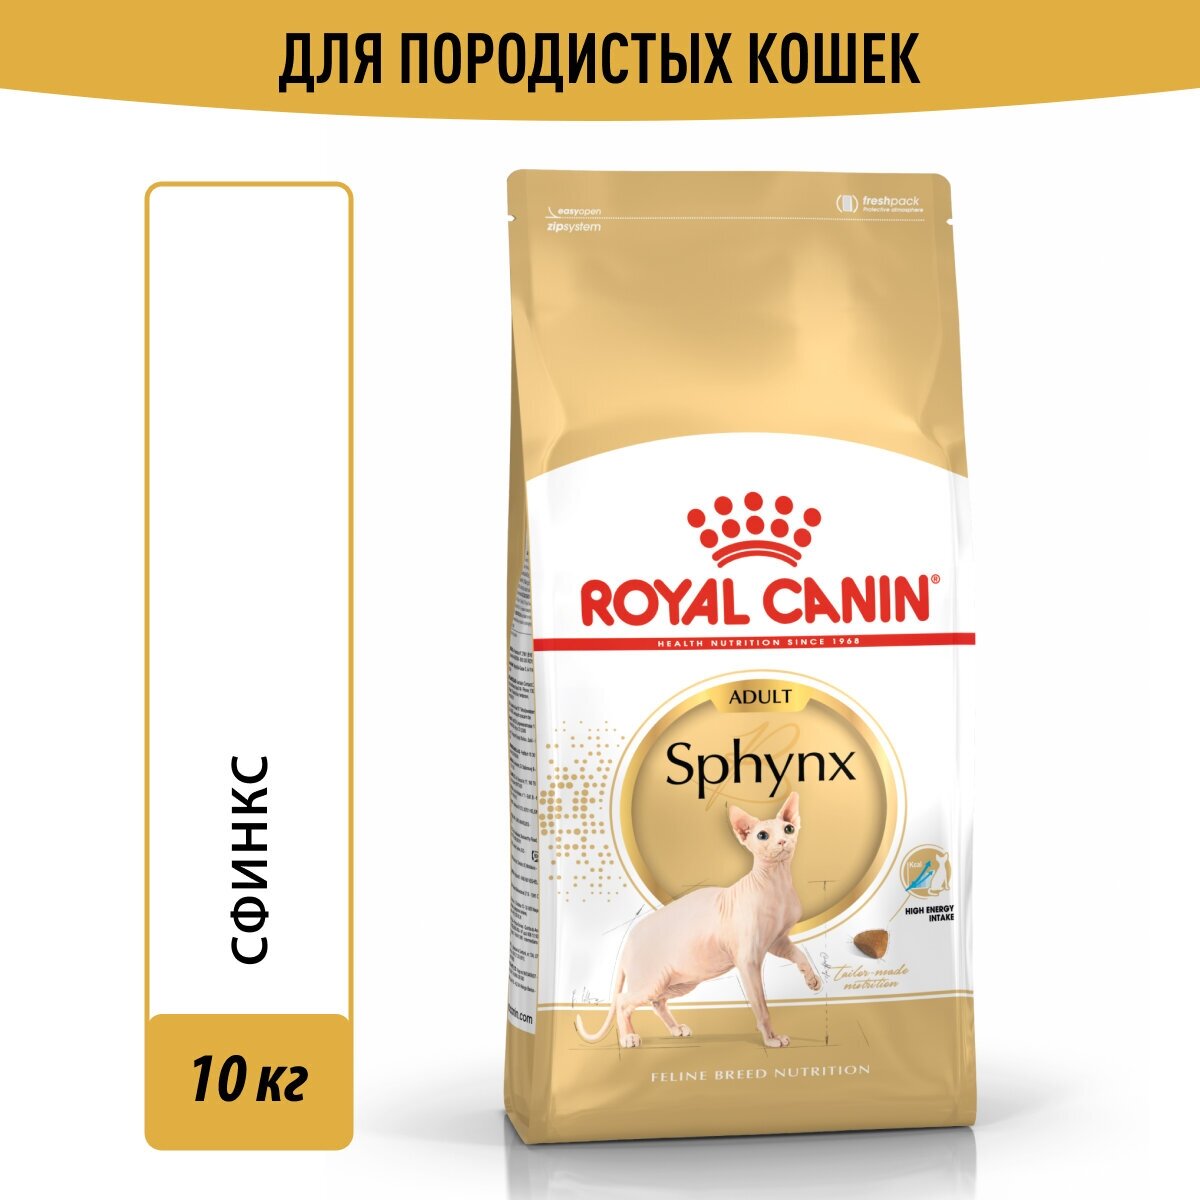 Корм для кошек Royal Canin Sphynx Adult (Сфинкс Эдалт) Корм сухой сбалансированный для взрослых кошек породы Сфинкс,10кг